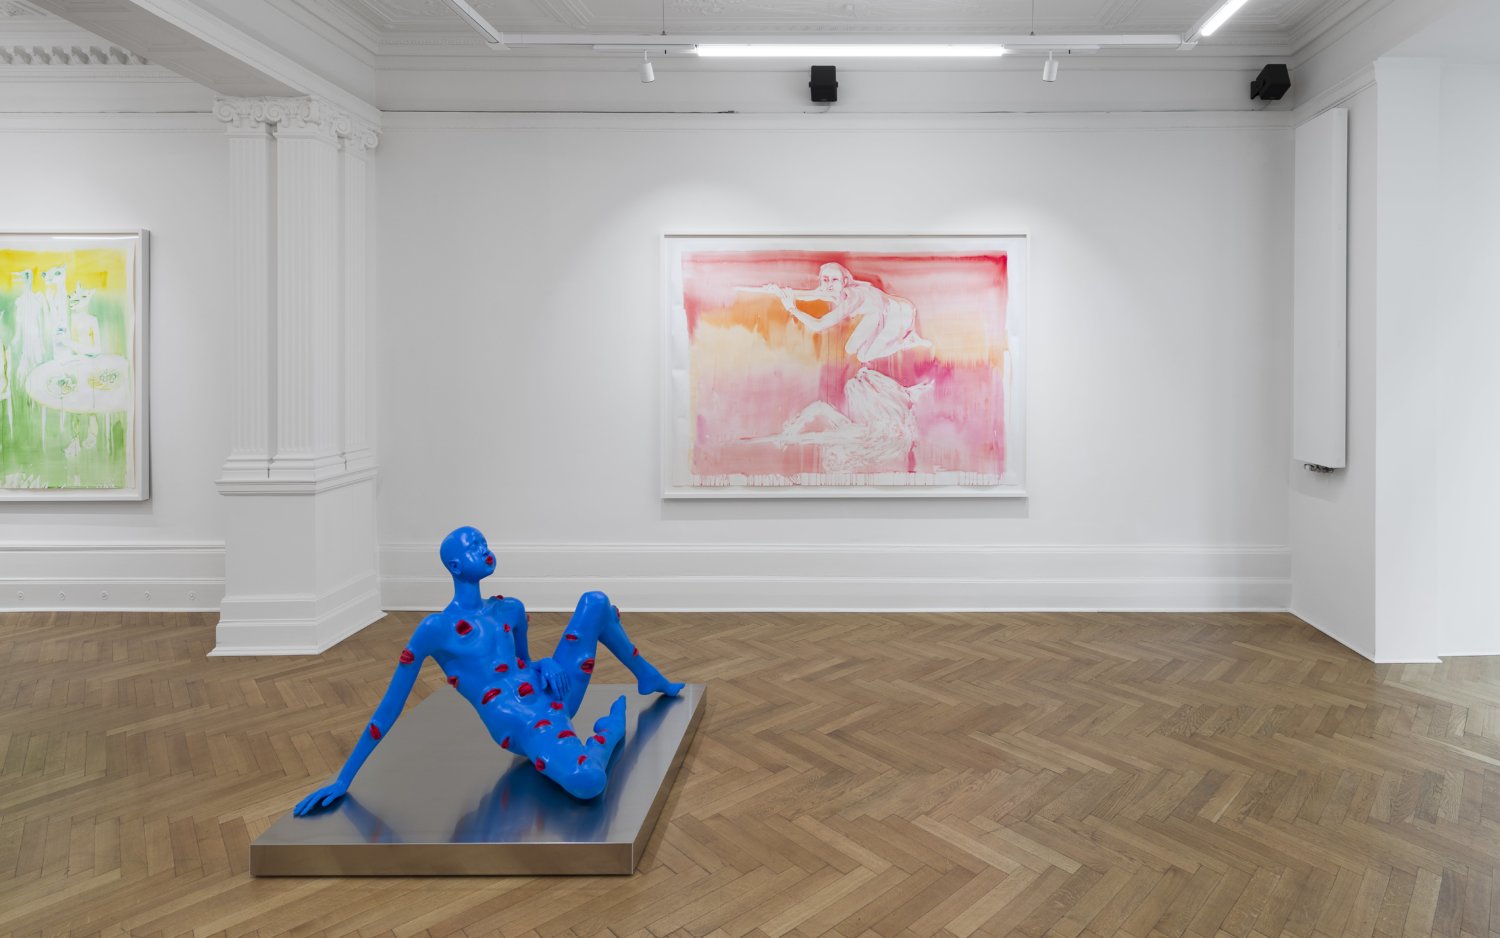 An der Wand hängen zwei große Aquarellmalereien von Marianna Simnett. Auf dem Boden steht eine Skulptur der Künstlerin, die komplett blau und mit roten Mündern überzogen ist. Sie bläht die Wangen auf.